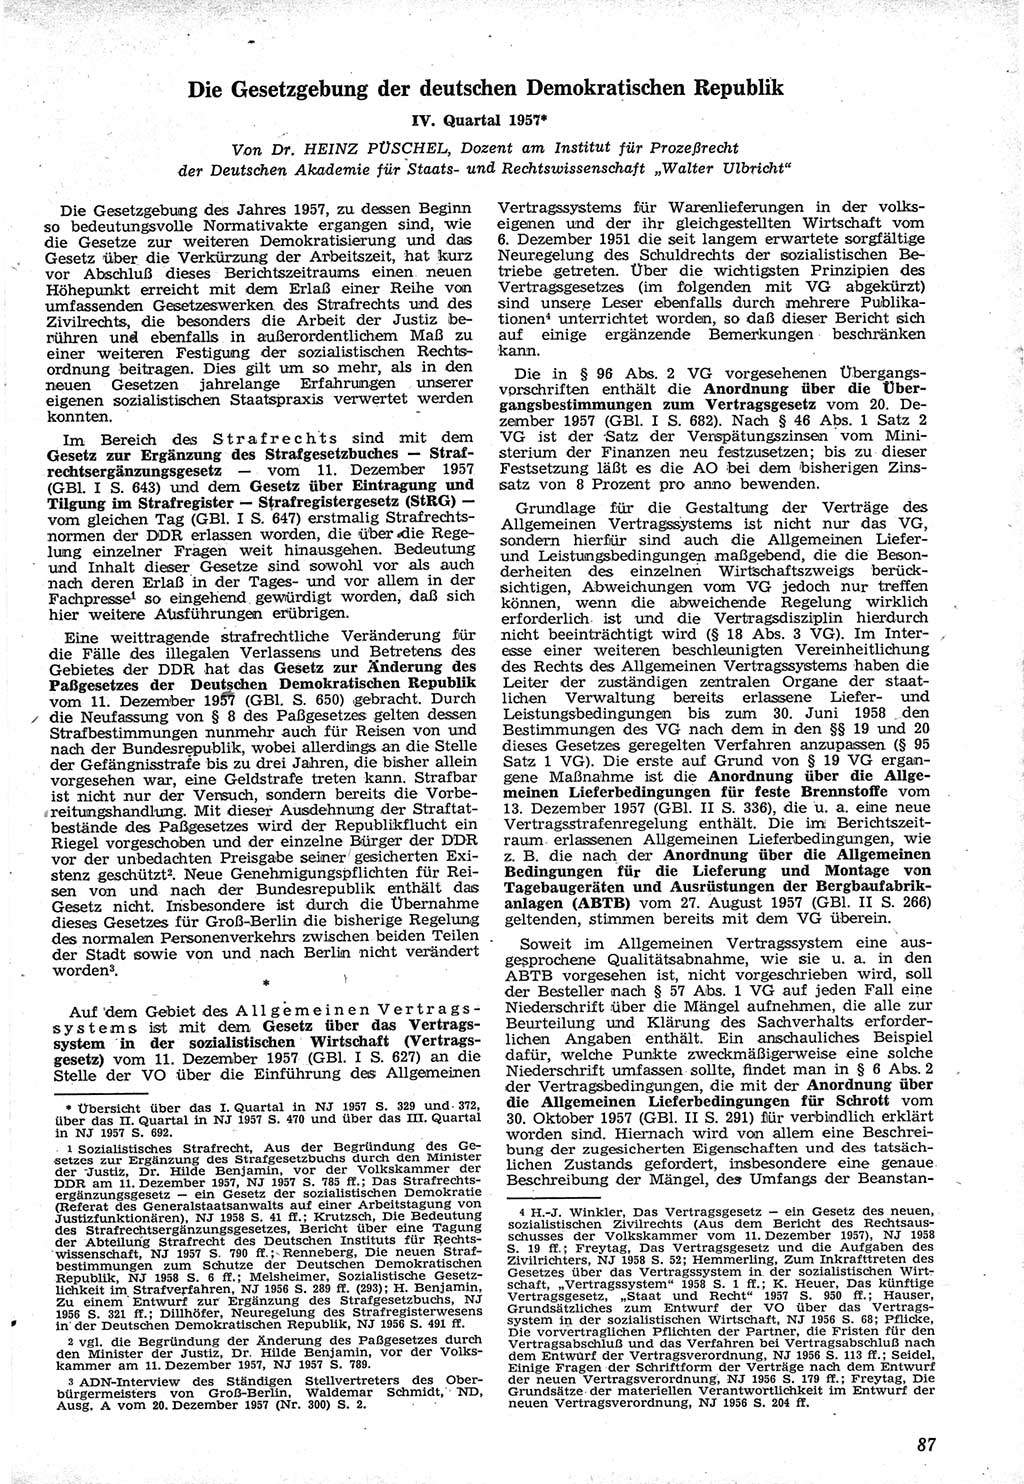 Neue Justiz (NJ), Zeitschrift für Recht und Rechtswissenschaft [Deutsche Demokratische Republik (DDR)], 12. Jahrgang 1958, Seite 87 (NJ DDR 1958, S. 87)